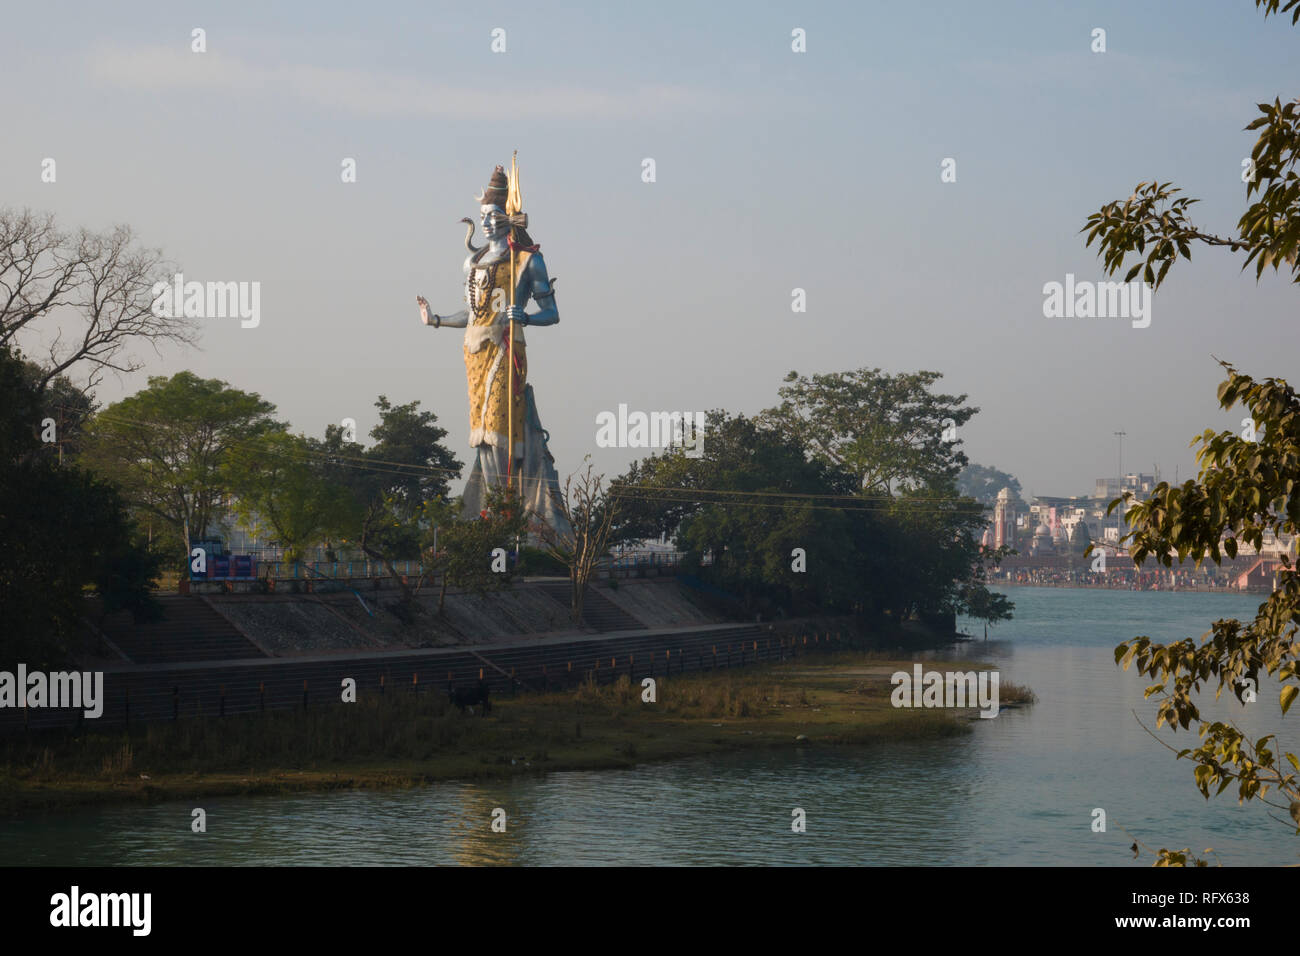 Statue du dieu Shiva géant sur les rives de la rivière Gange à Haridwar, Inde Banque D'Images